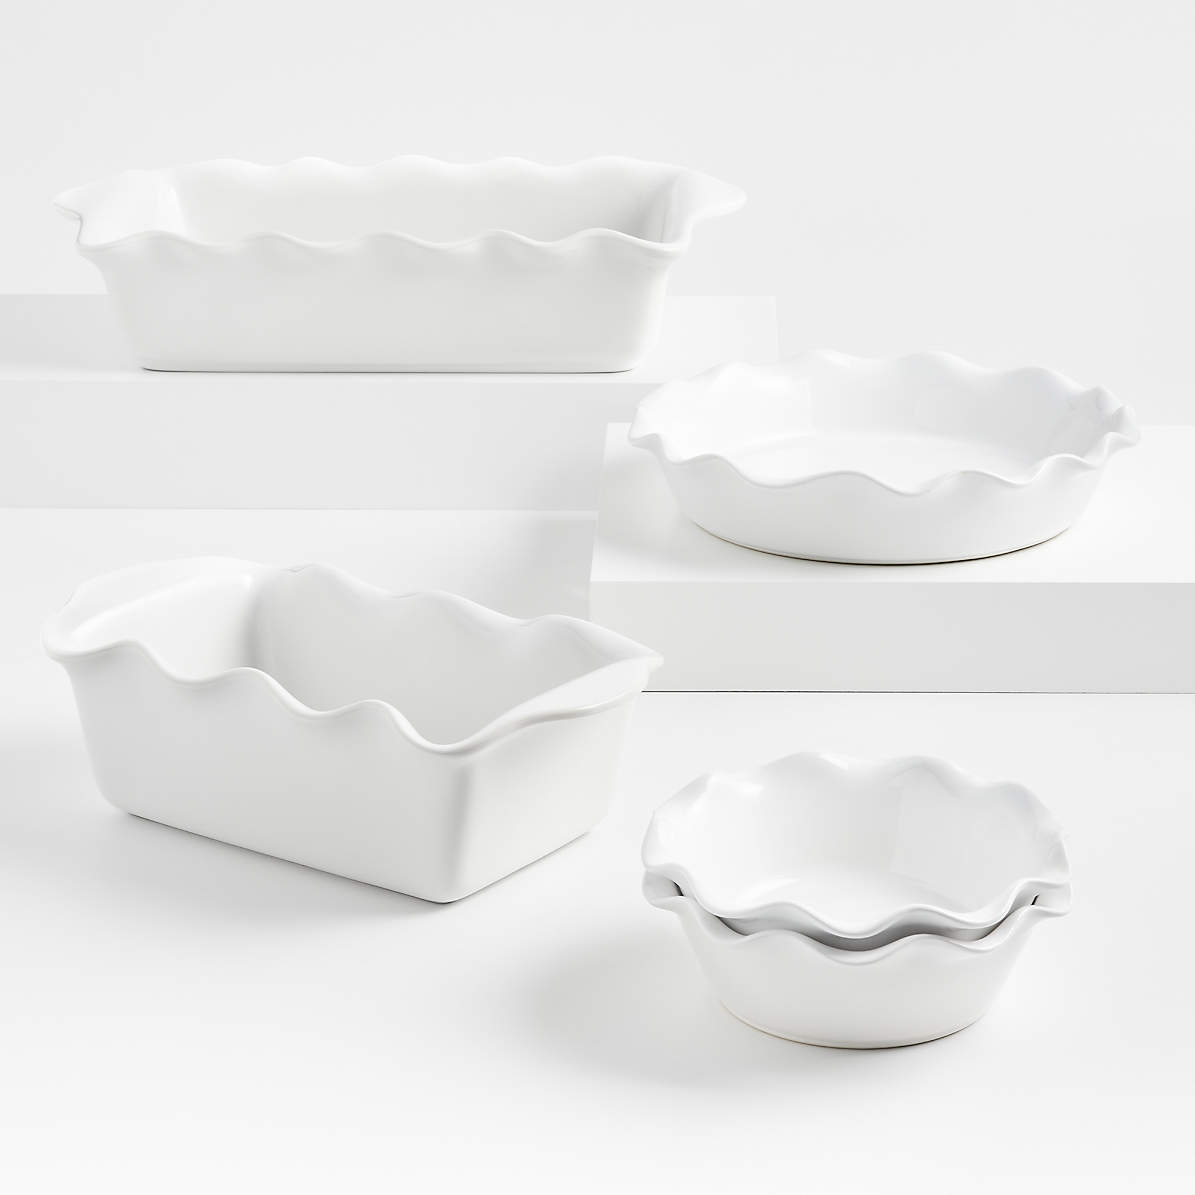 Staub Ceramics White 5-Piece Bakeware Set + Reviews